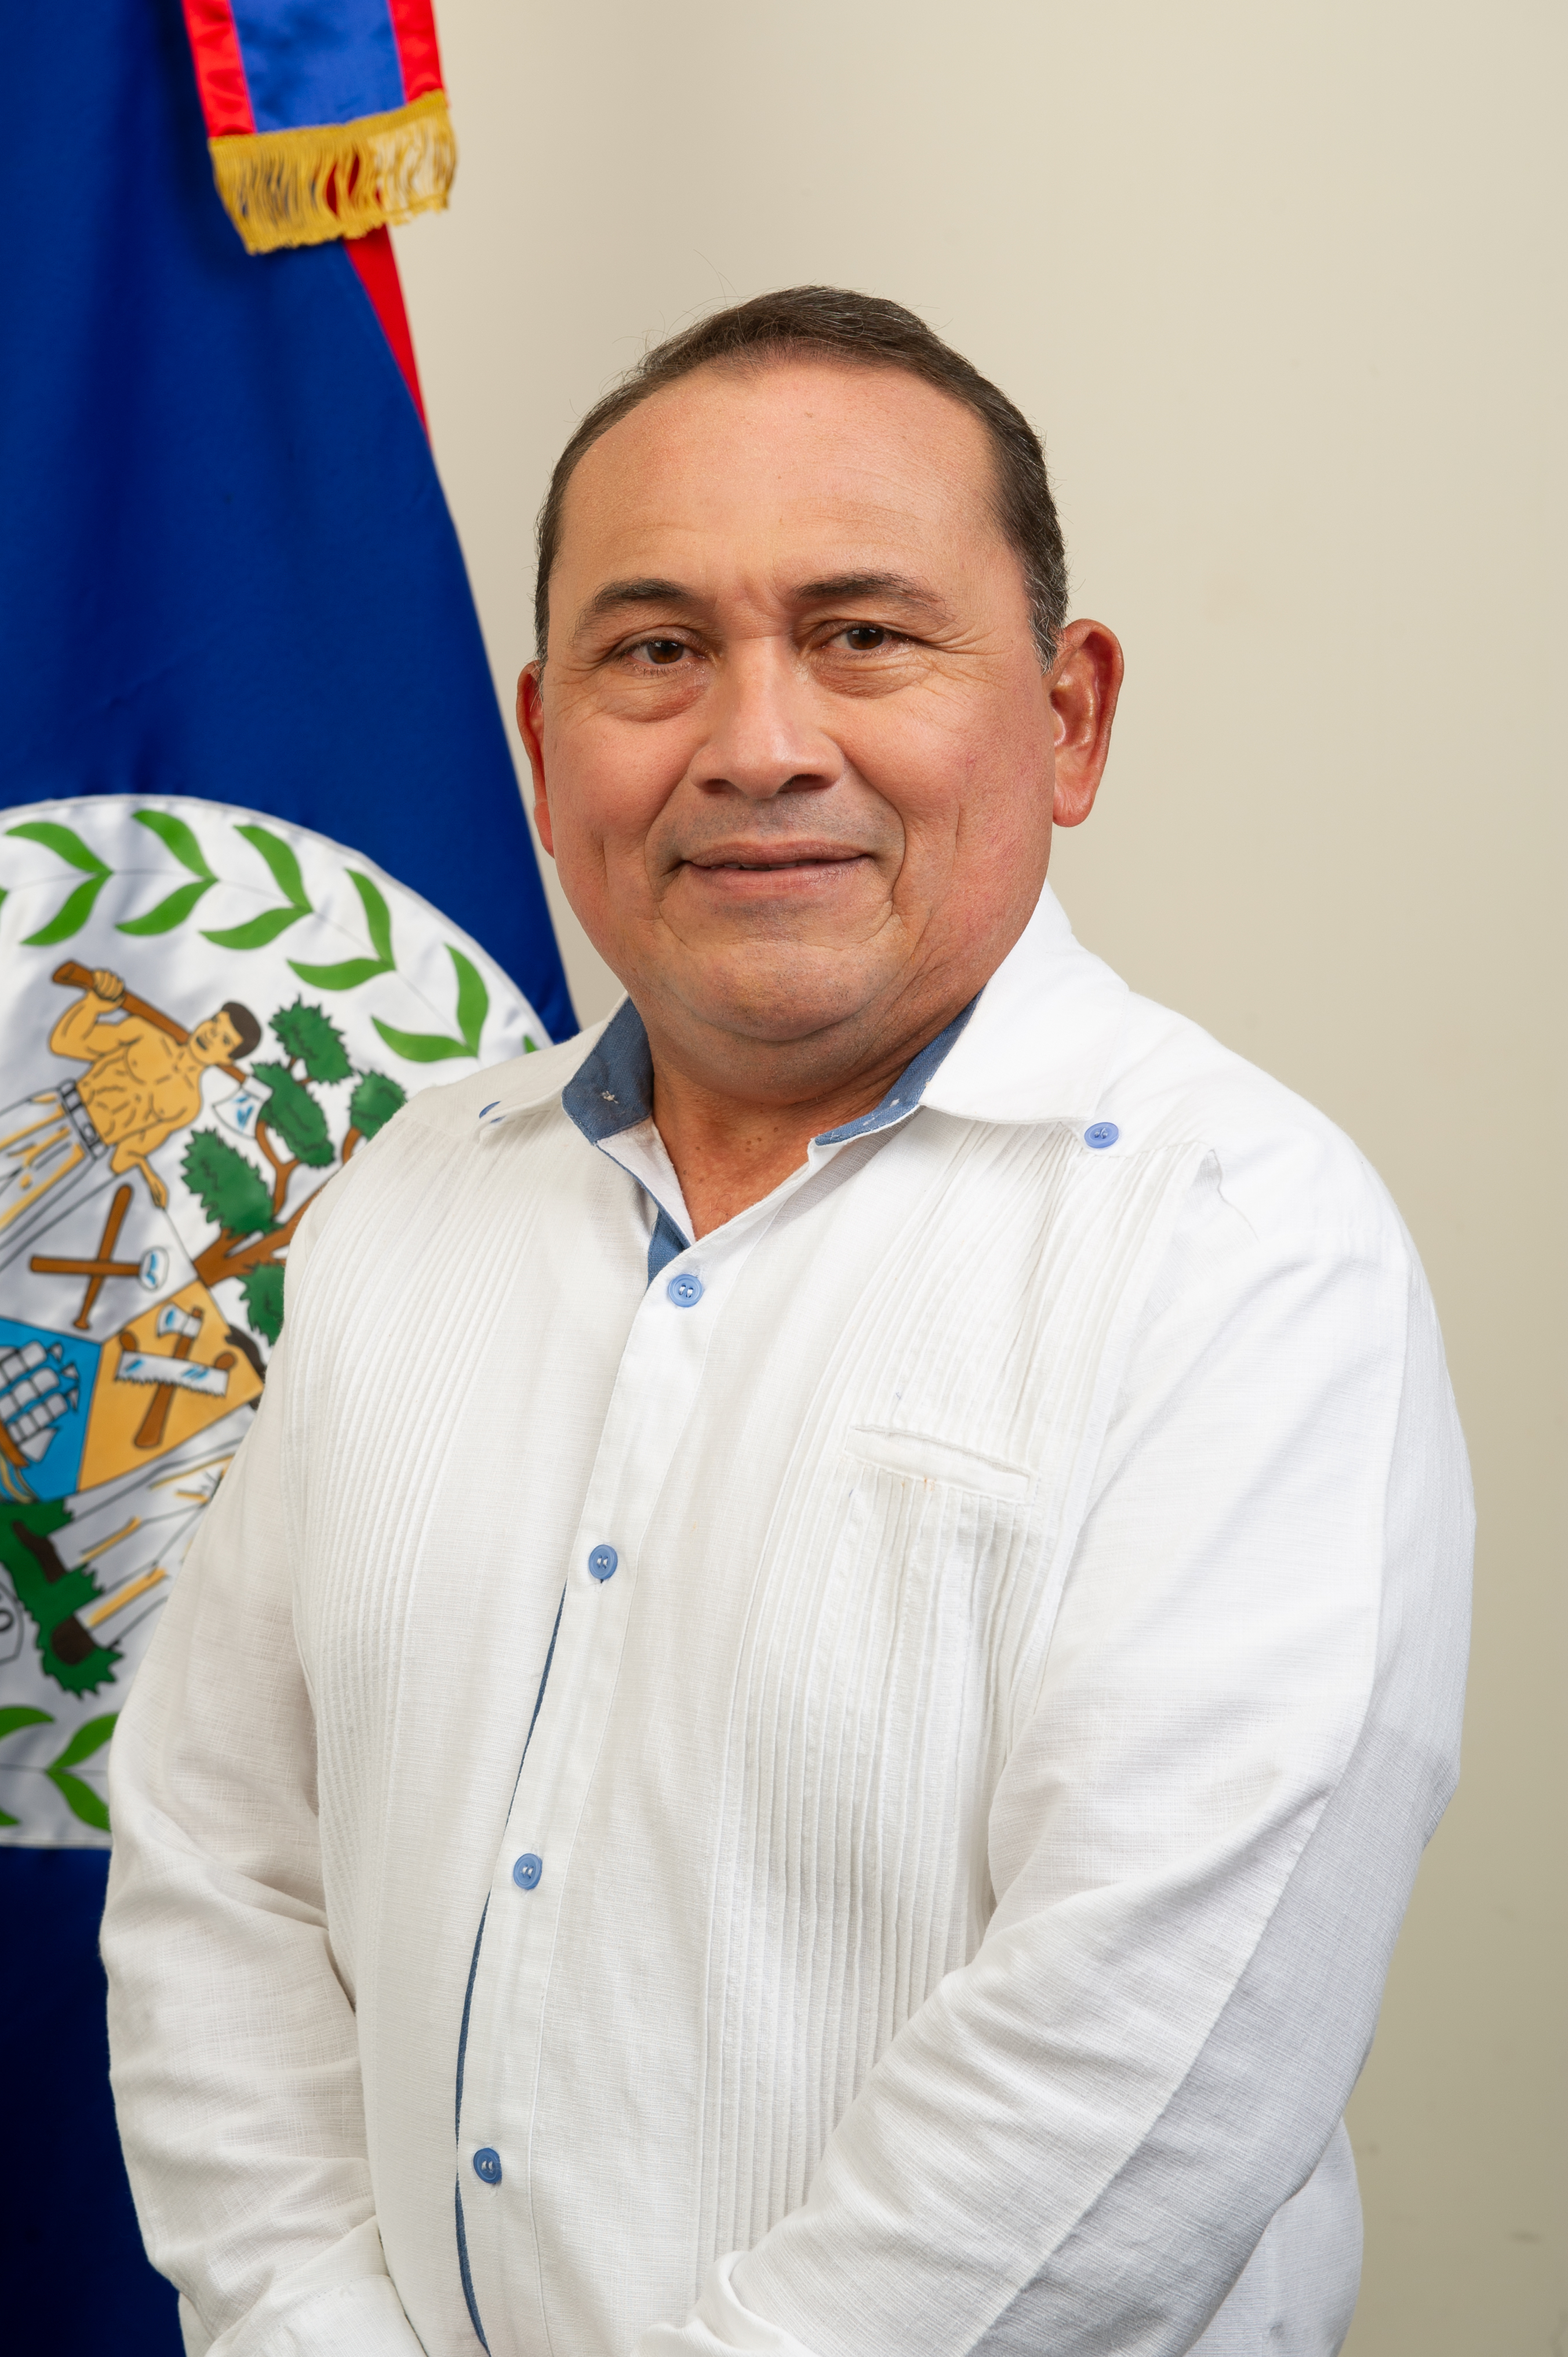 Hon. Andre Perez